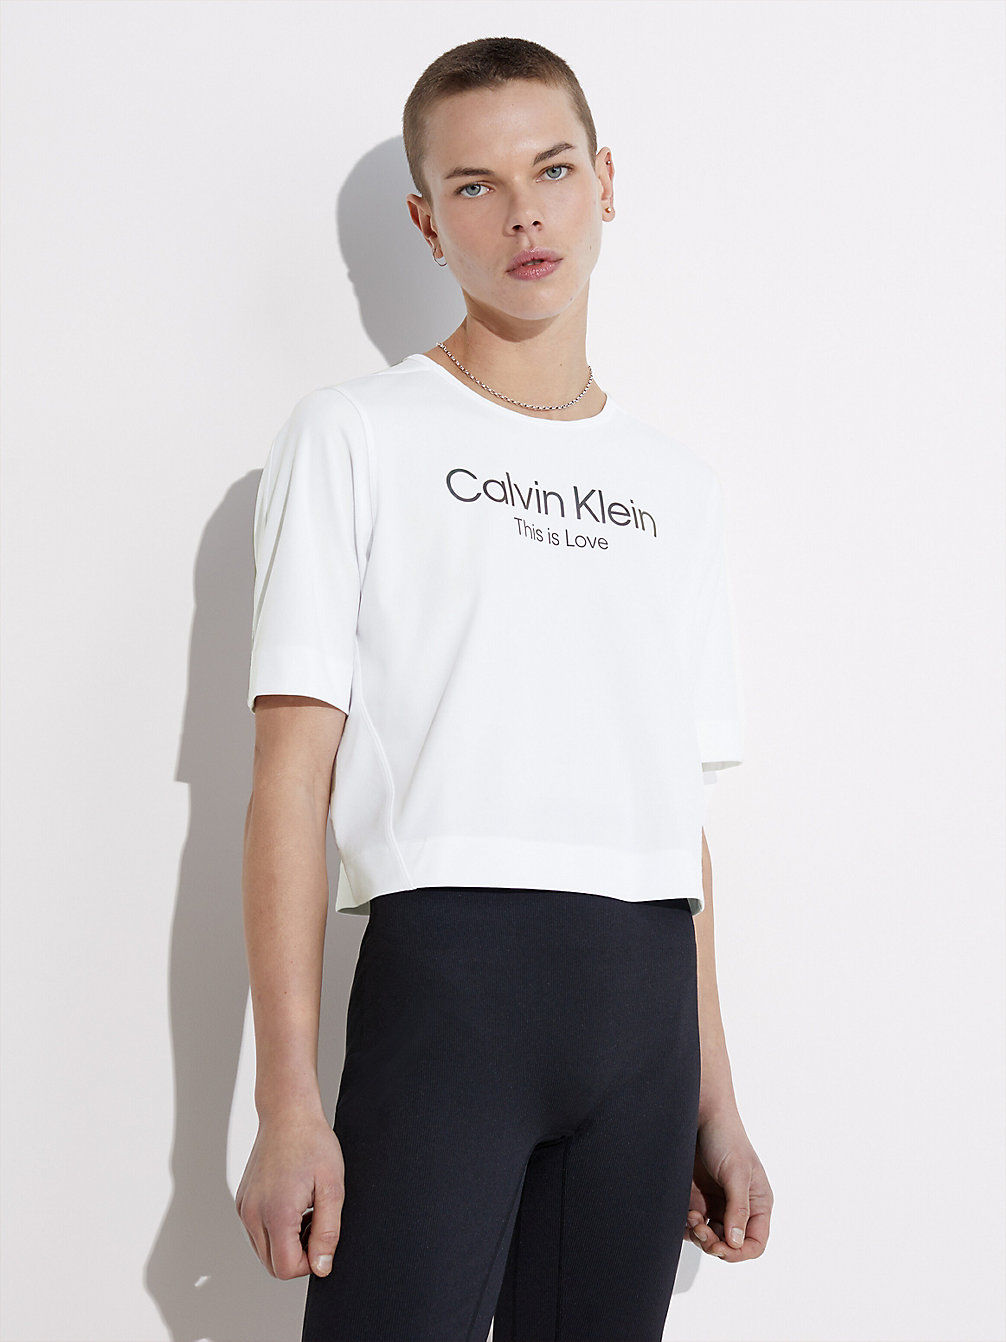 T-Shirt Da Palestra - Pride > BRIGHT WHITE > undefined donna > Calvin Klein